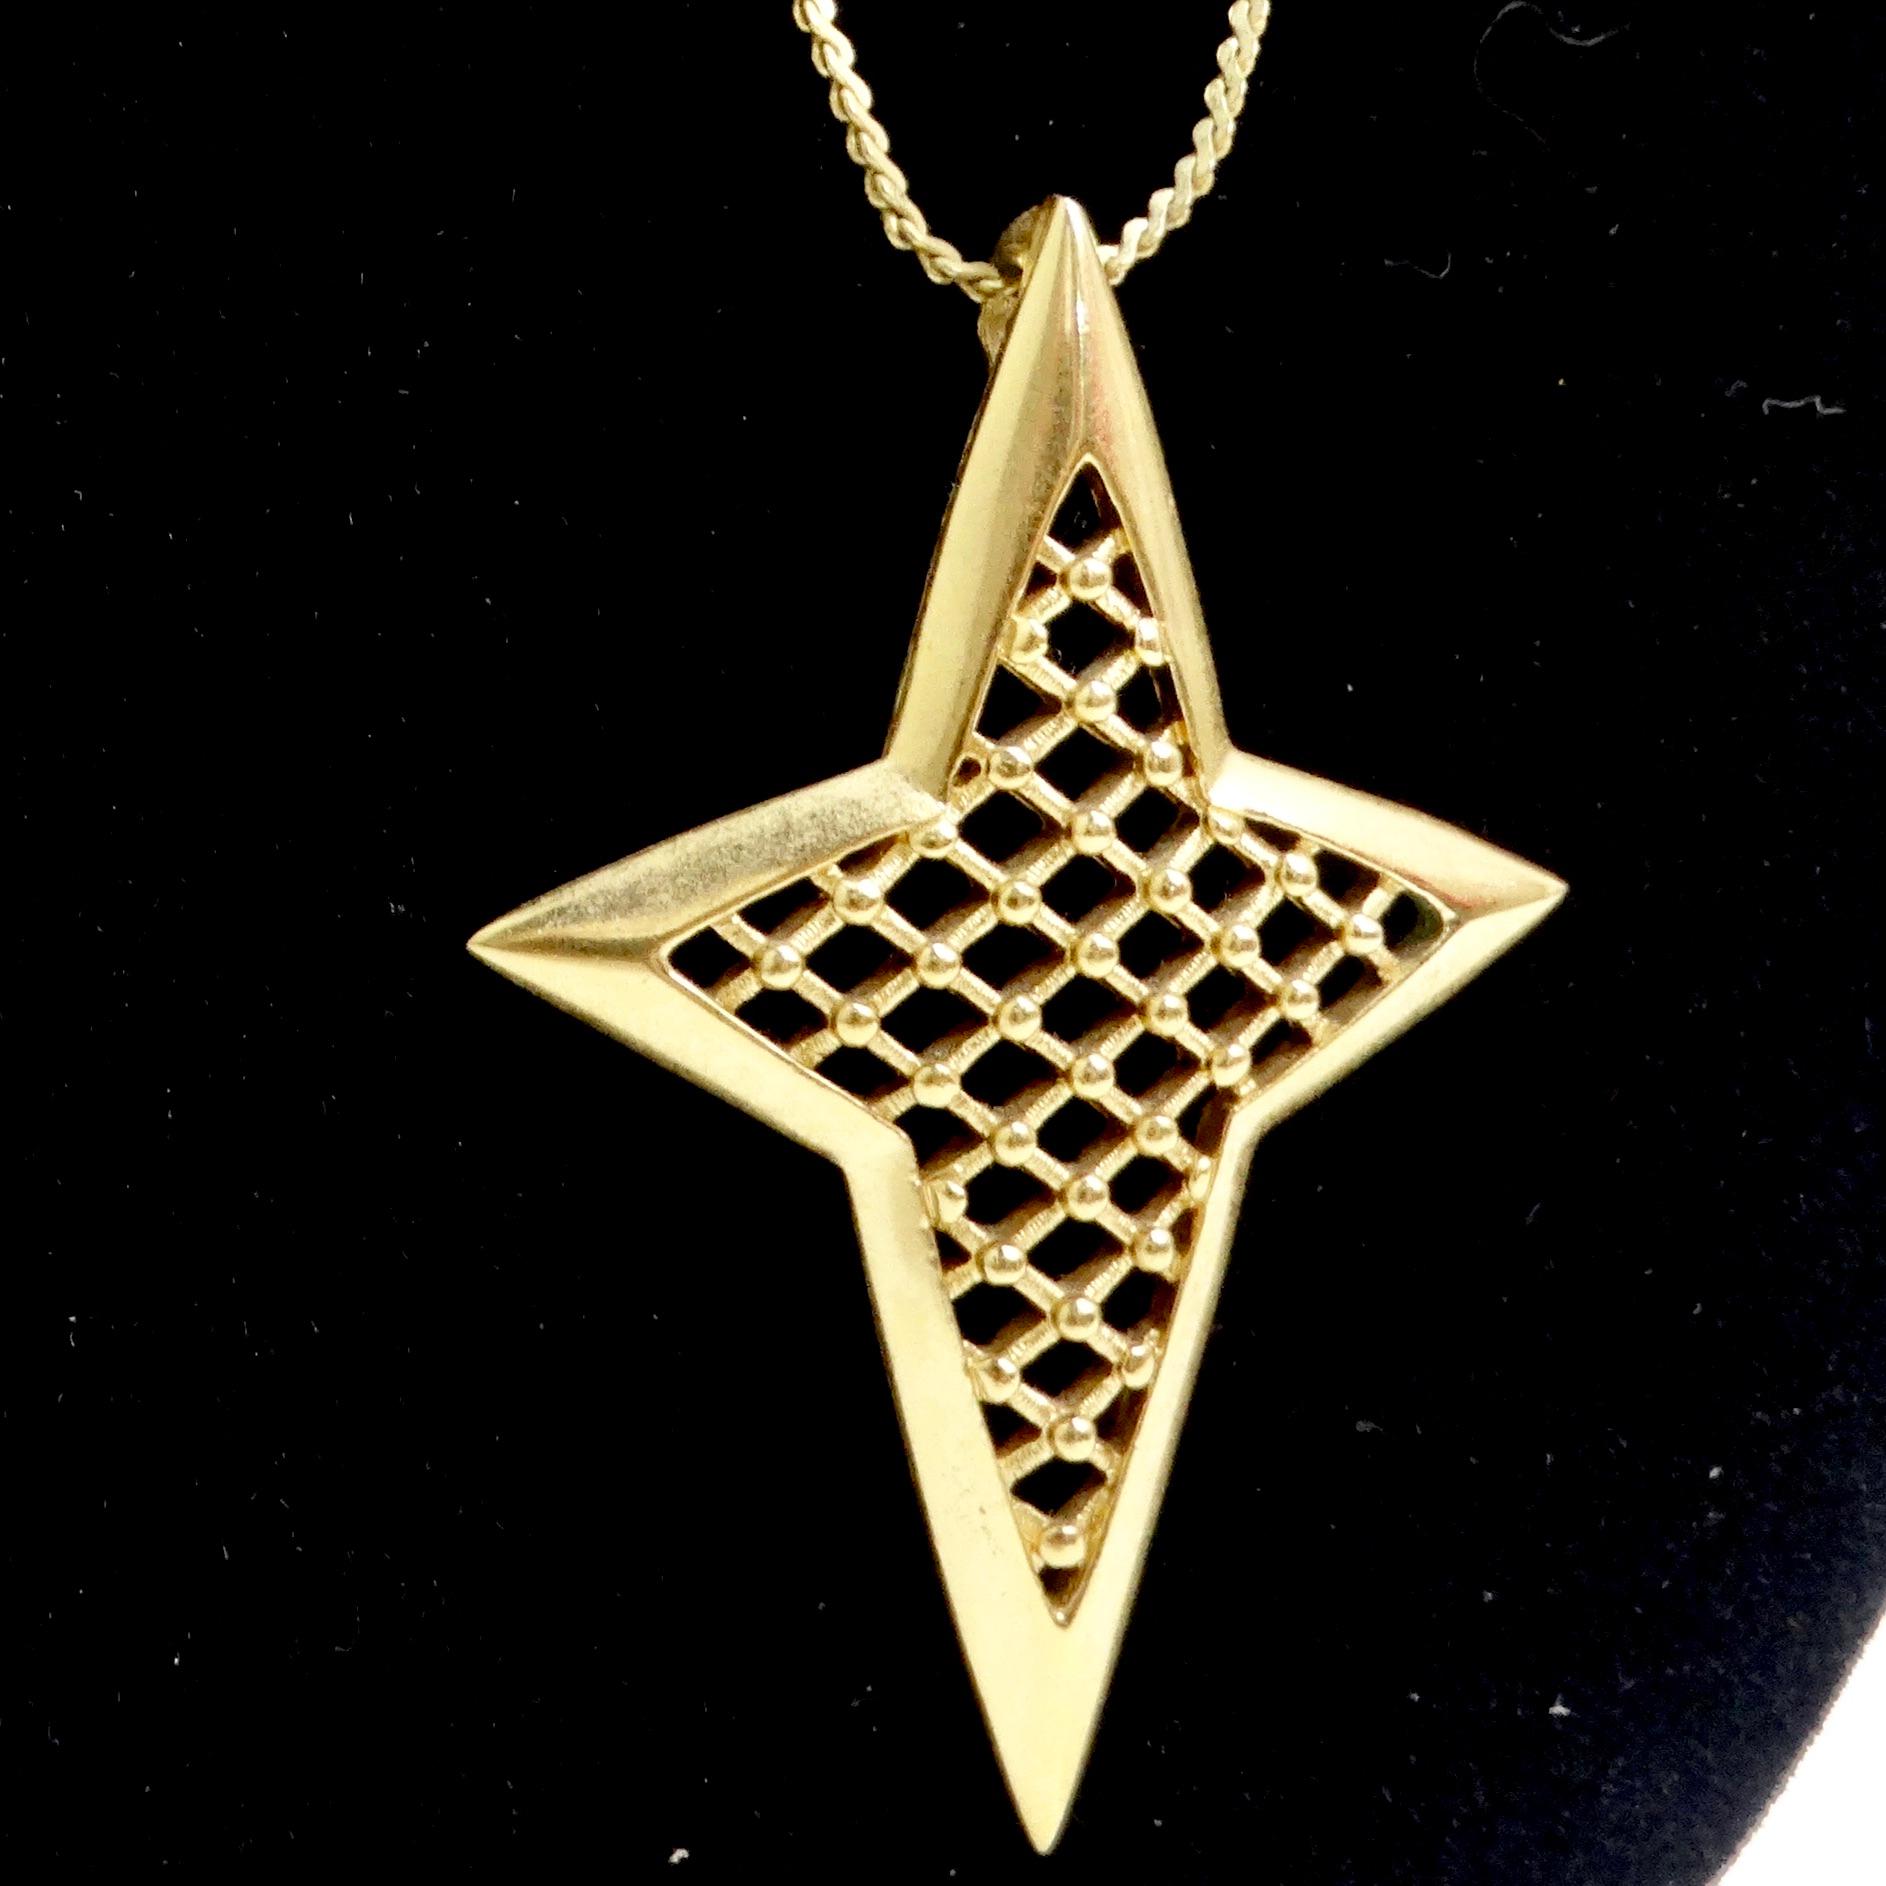 Voici le collier à pendentif étoile en or de Trifari - une pièce classique qui ajoute une touche d'élégance céleste à votre style ! Ce collier exquis en ton or présente un grand pendentif en forme d'étoile avec un motif entrecroisé captivant,